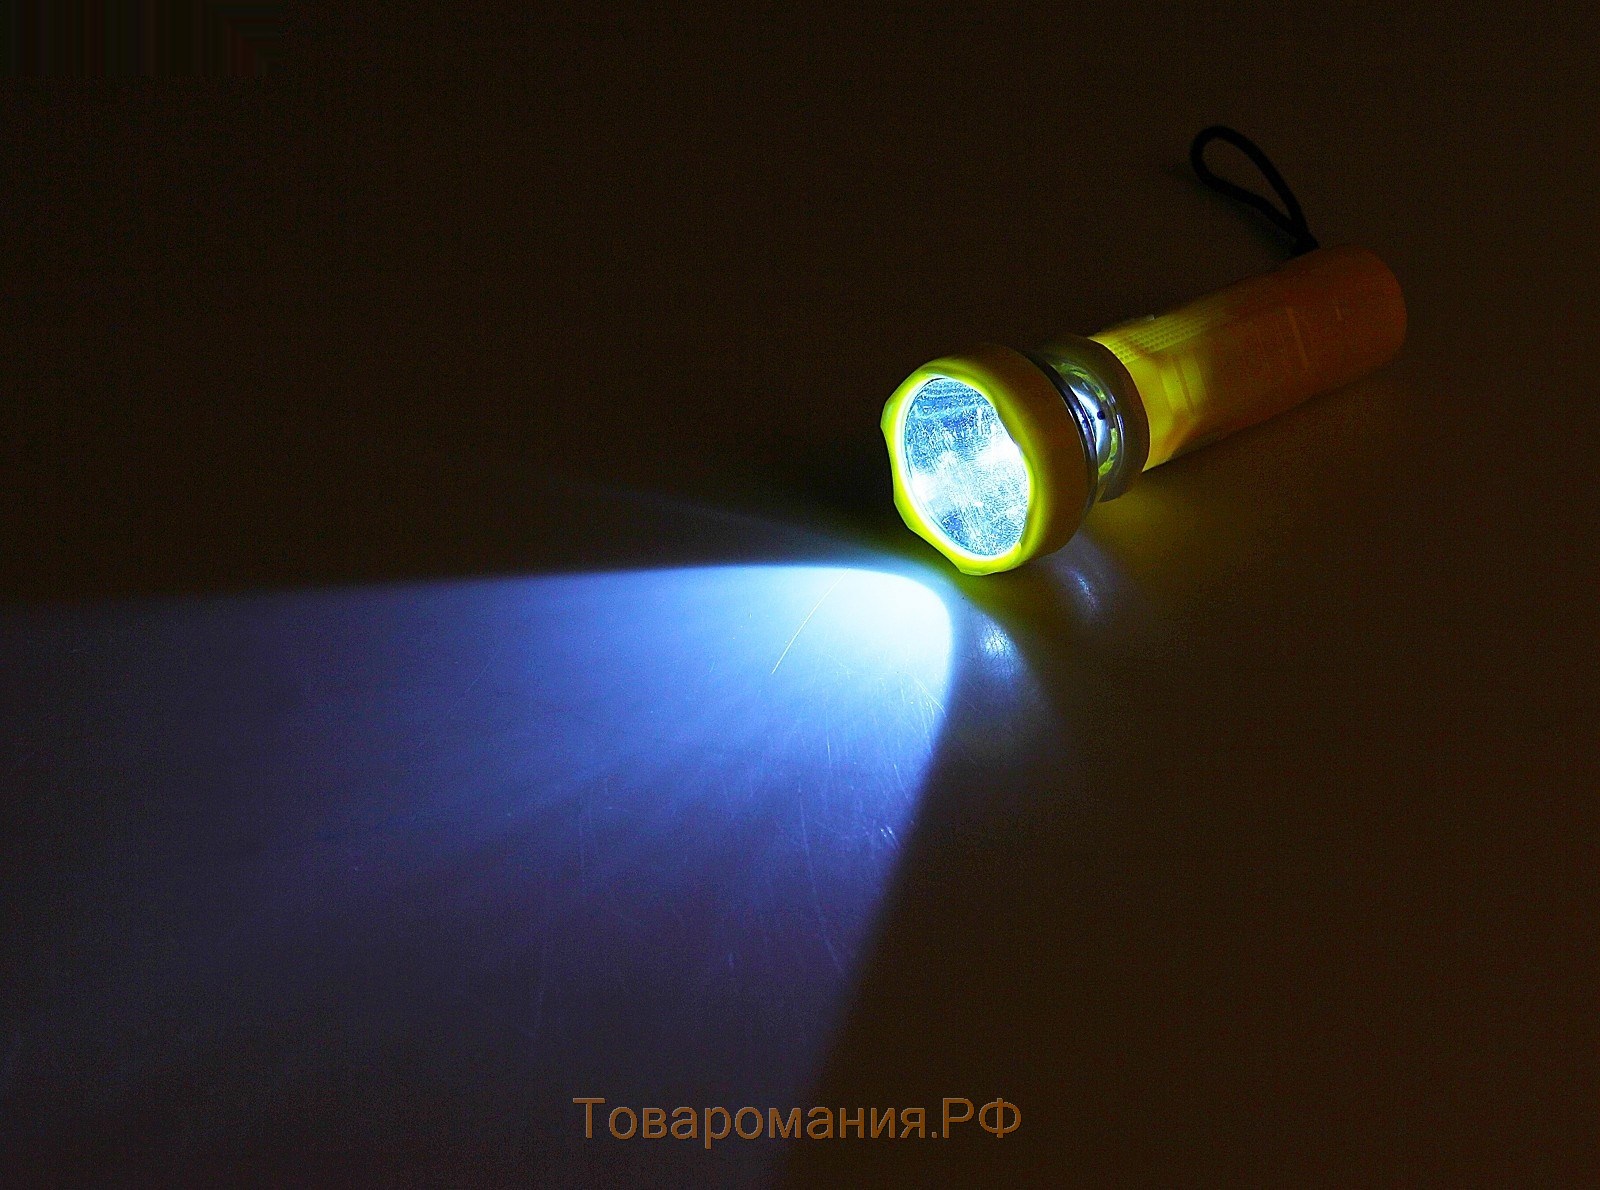 Фонарь ручной "Сумерки" 1 LED, zoom, рассеиватель прозрачный, узорный, микс, 4х11 см